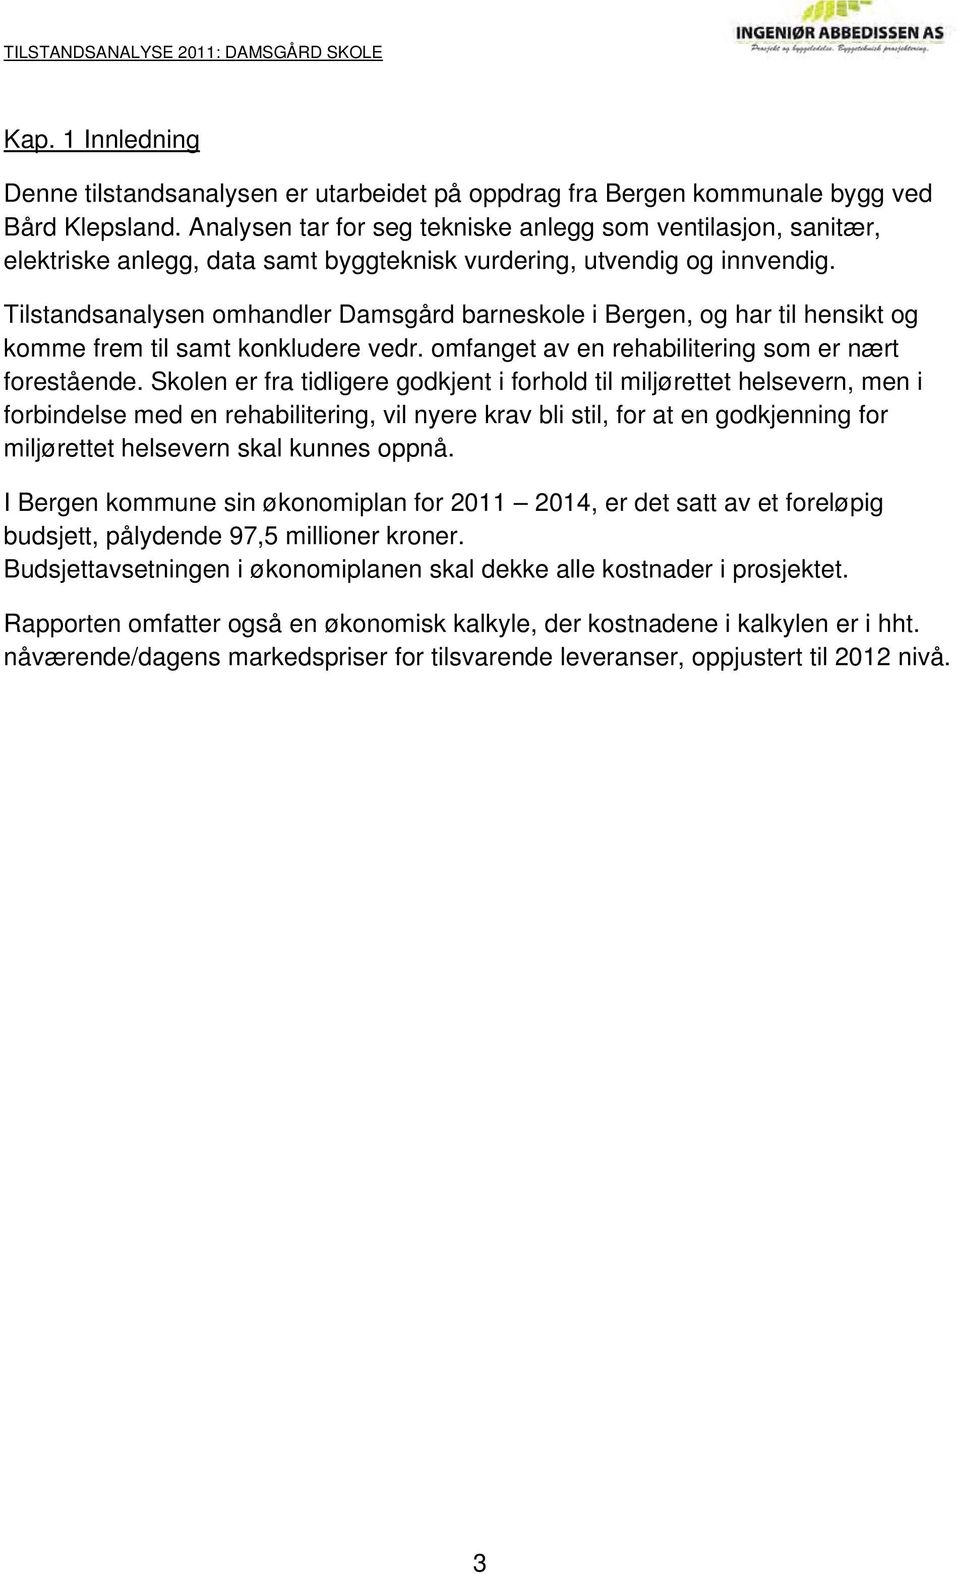 Tilstandsanalysen omhandler Damsgård barneskole i Bergen, og har til hensikt og komme frem til samt konkludere vedr. omfanget av en rehabilitering som er nært forestående.